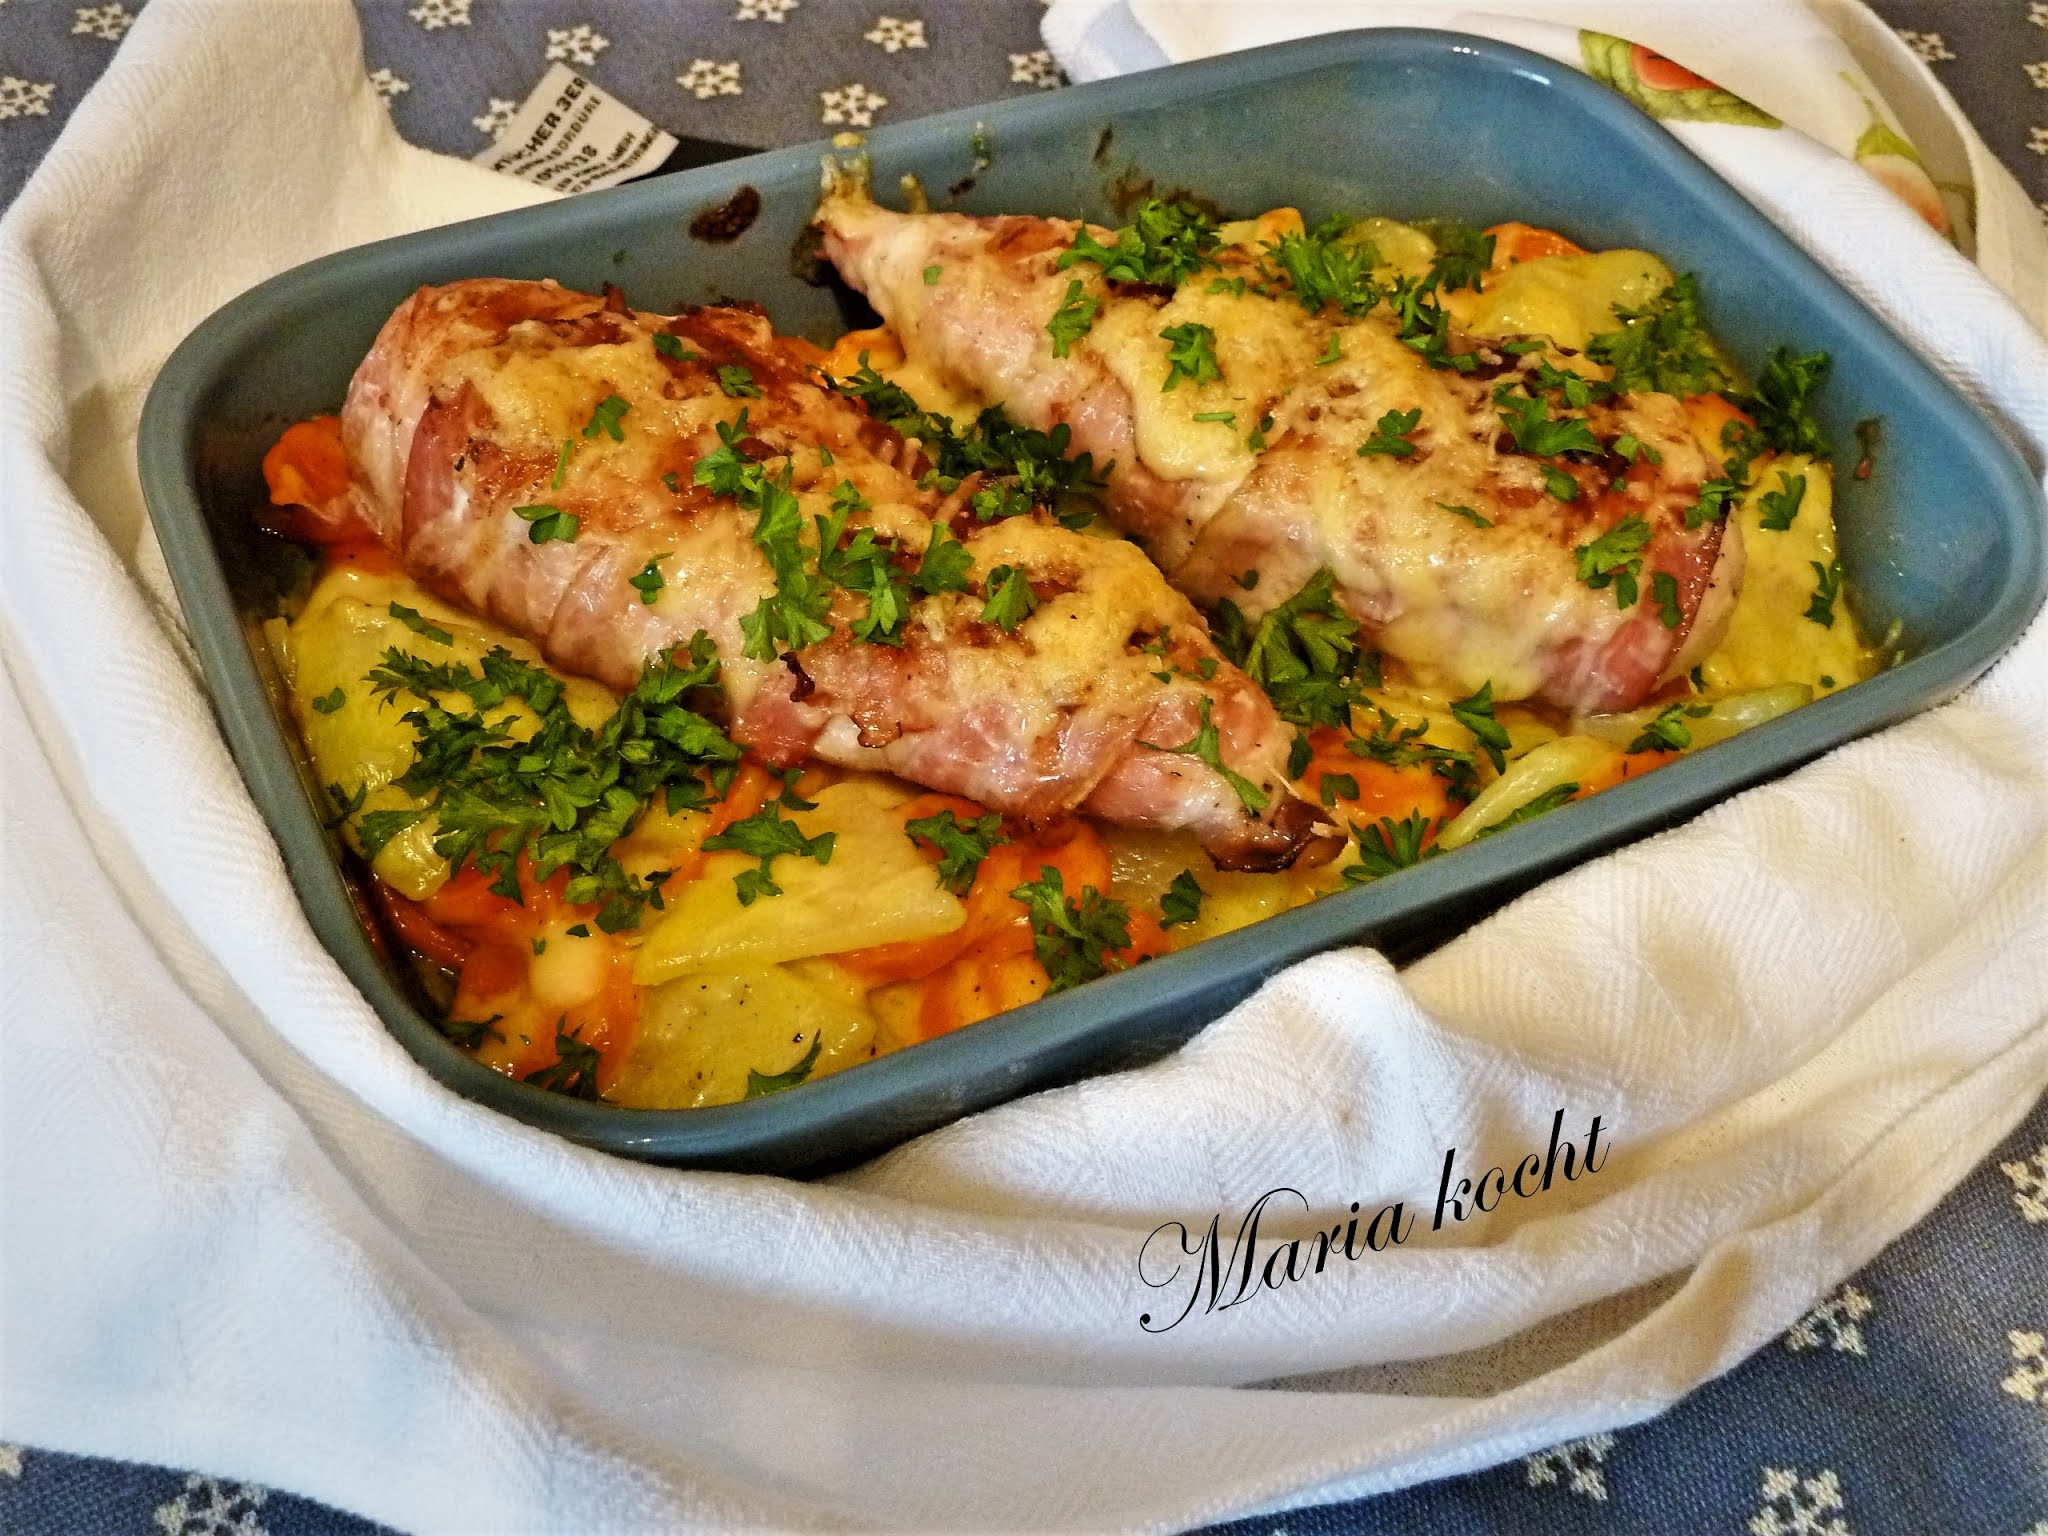 Maria kocht: Hähnchenbrust auf Gemüsebeet / Csirkemell zöldségágyon